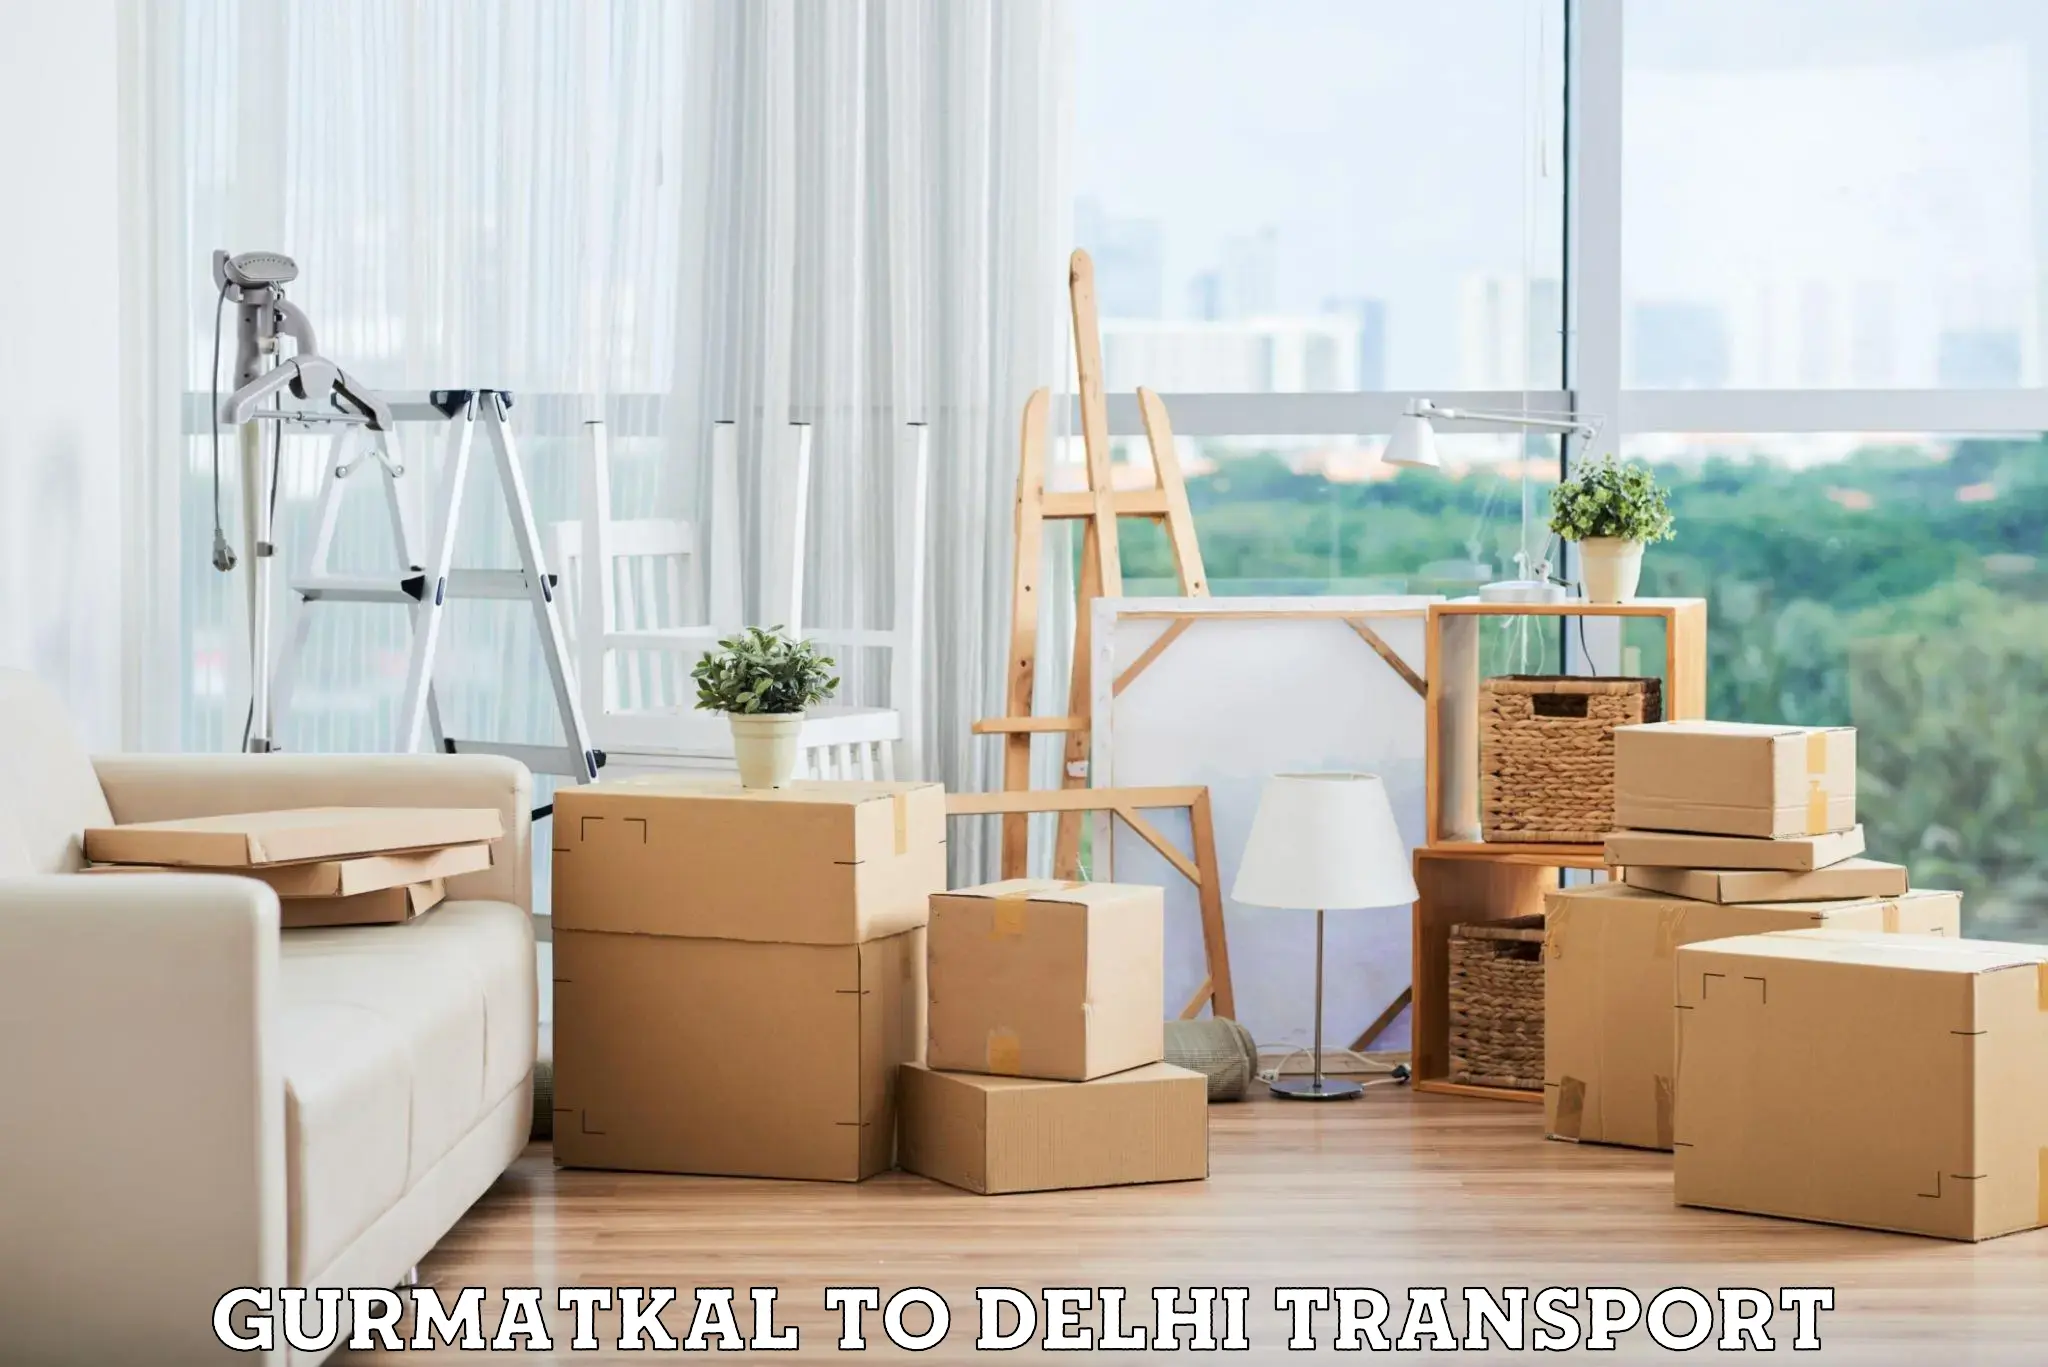 Transportation services Gurmatkal to NIT Delhi